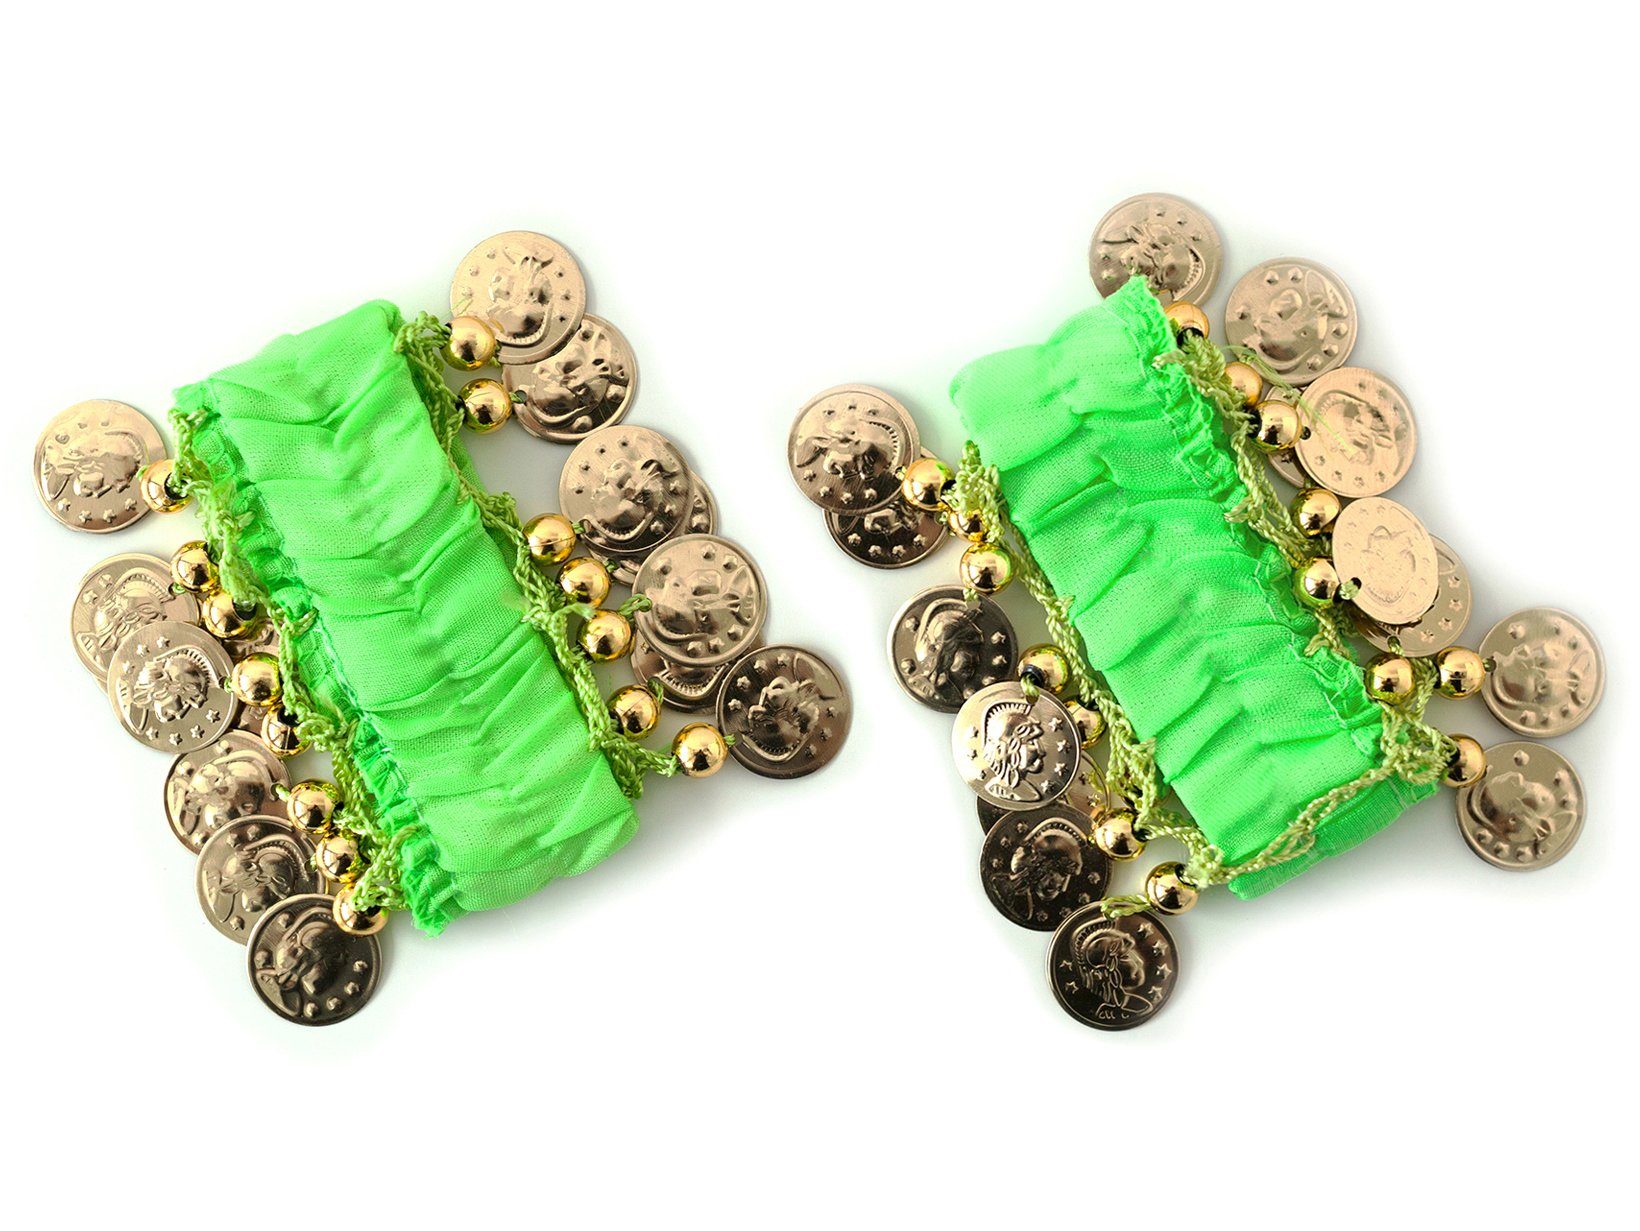 Armbänder Belly Handkette (Paar) MyBeautyworld24 Armband grün Dance Fasching